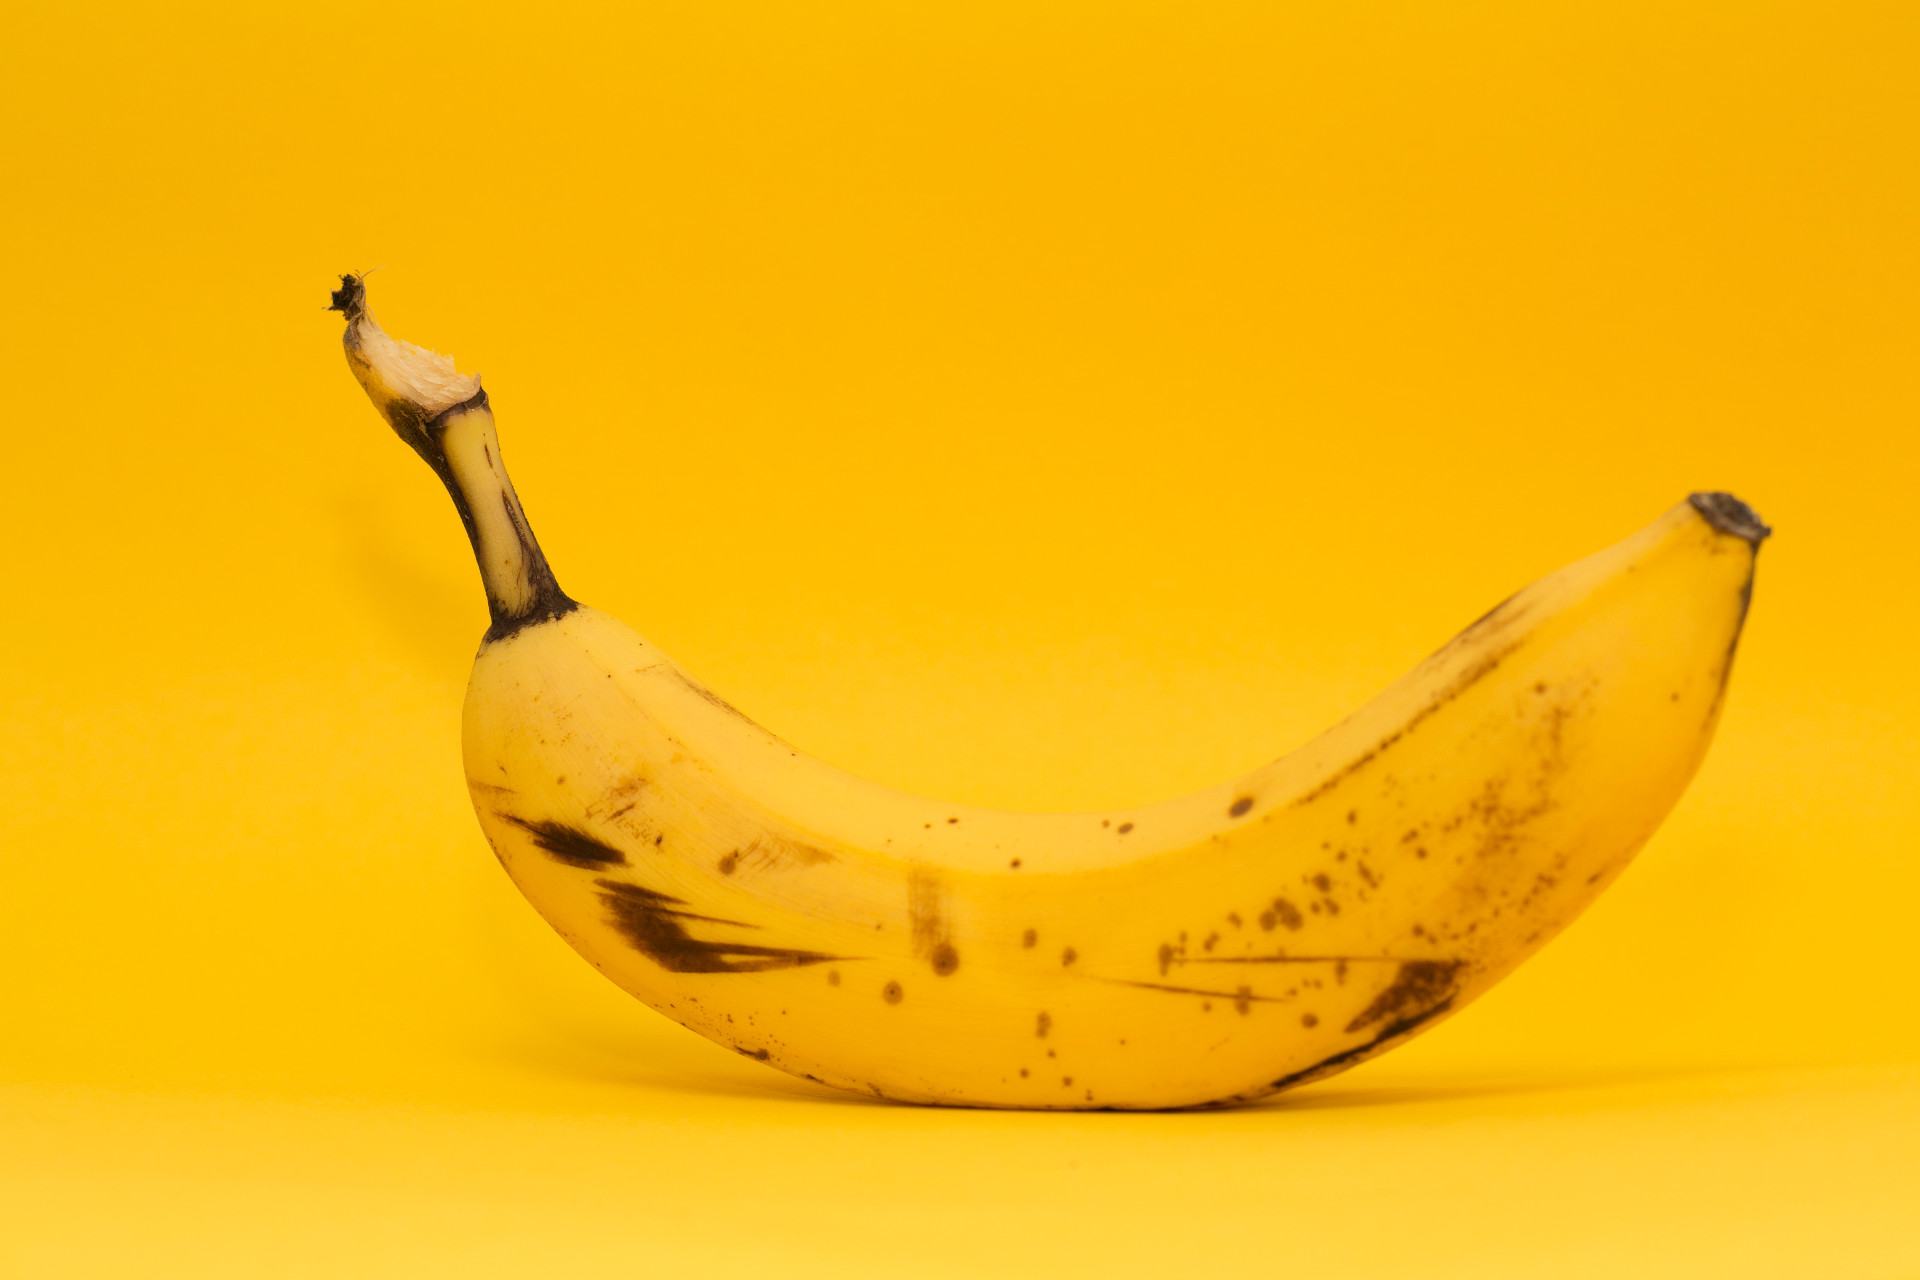 Banány uvoľňujú etylénový plyn, ktorý je prirodzenou súčasťou procesu ich dozrievania. Keď chcete zabrániť tomu, aby banány v priebehu noci zhnedli, zabaľte stonky do plastového obalu alebo baliacej fólie. 